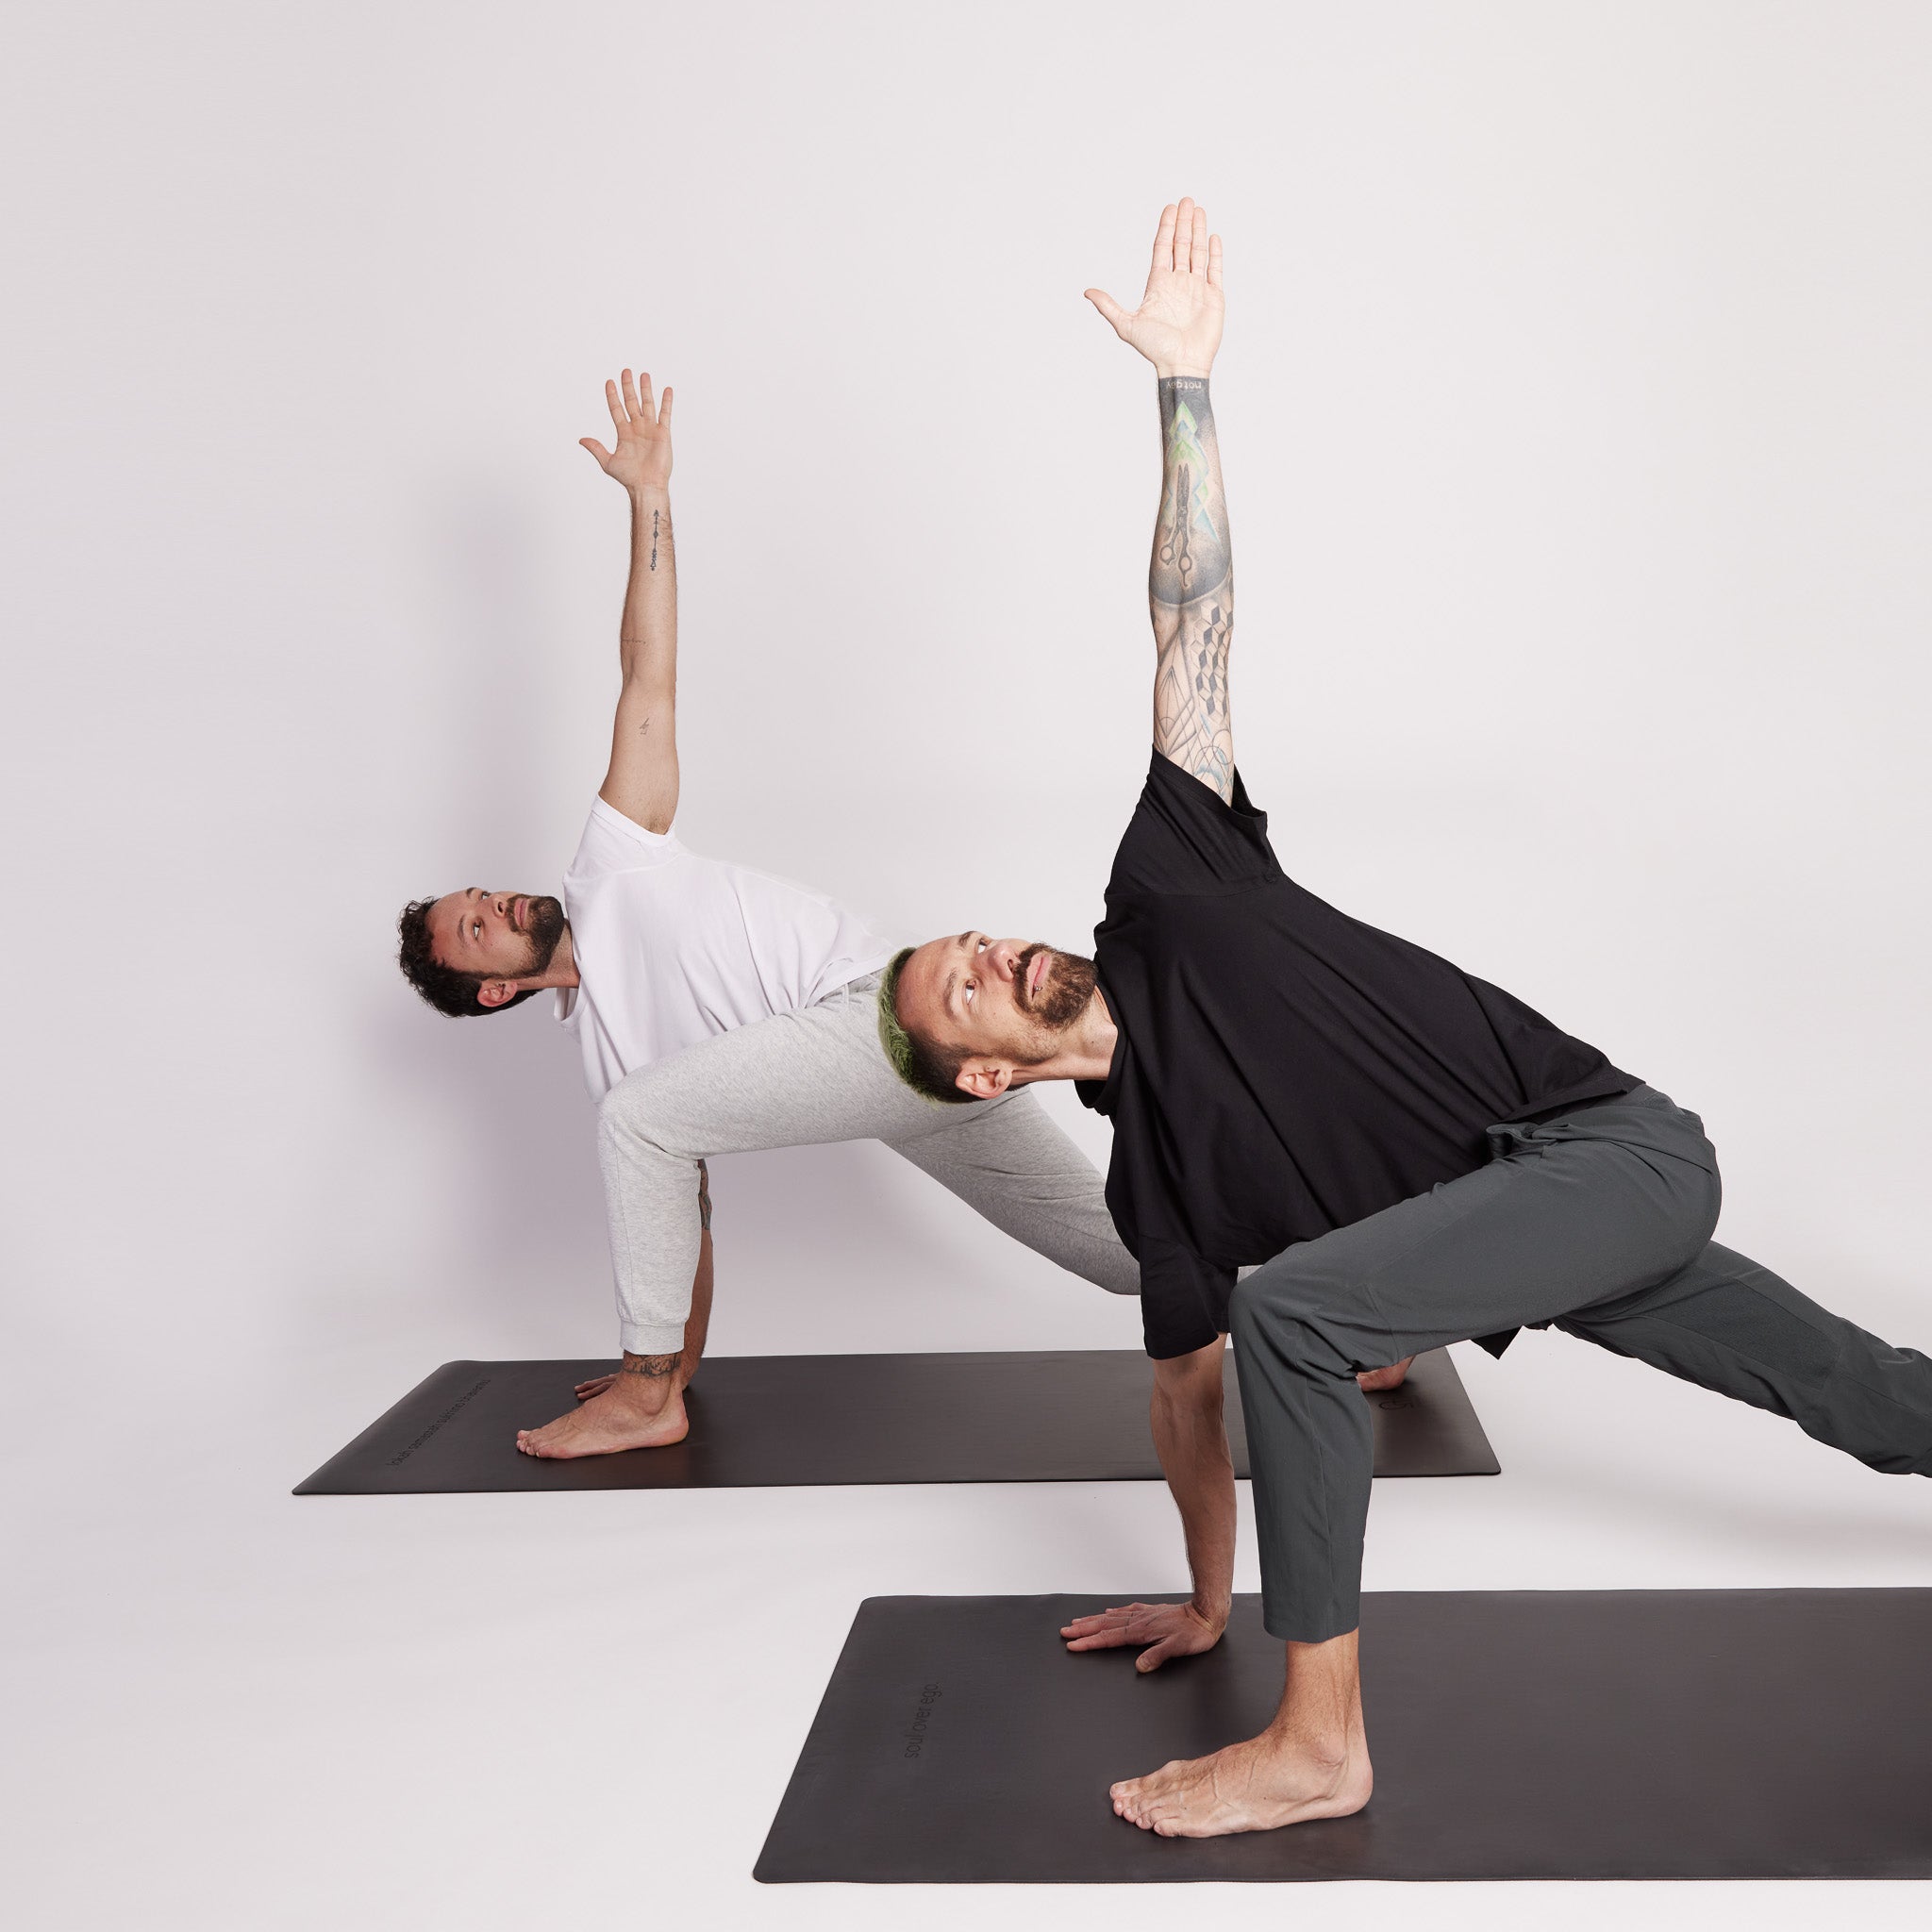 ultra rutschfeste yogamatte 4 mm schwarz mit zwei männern, die yoga praktizieren